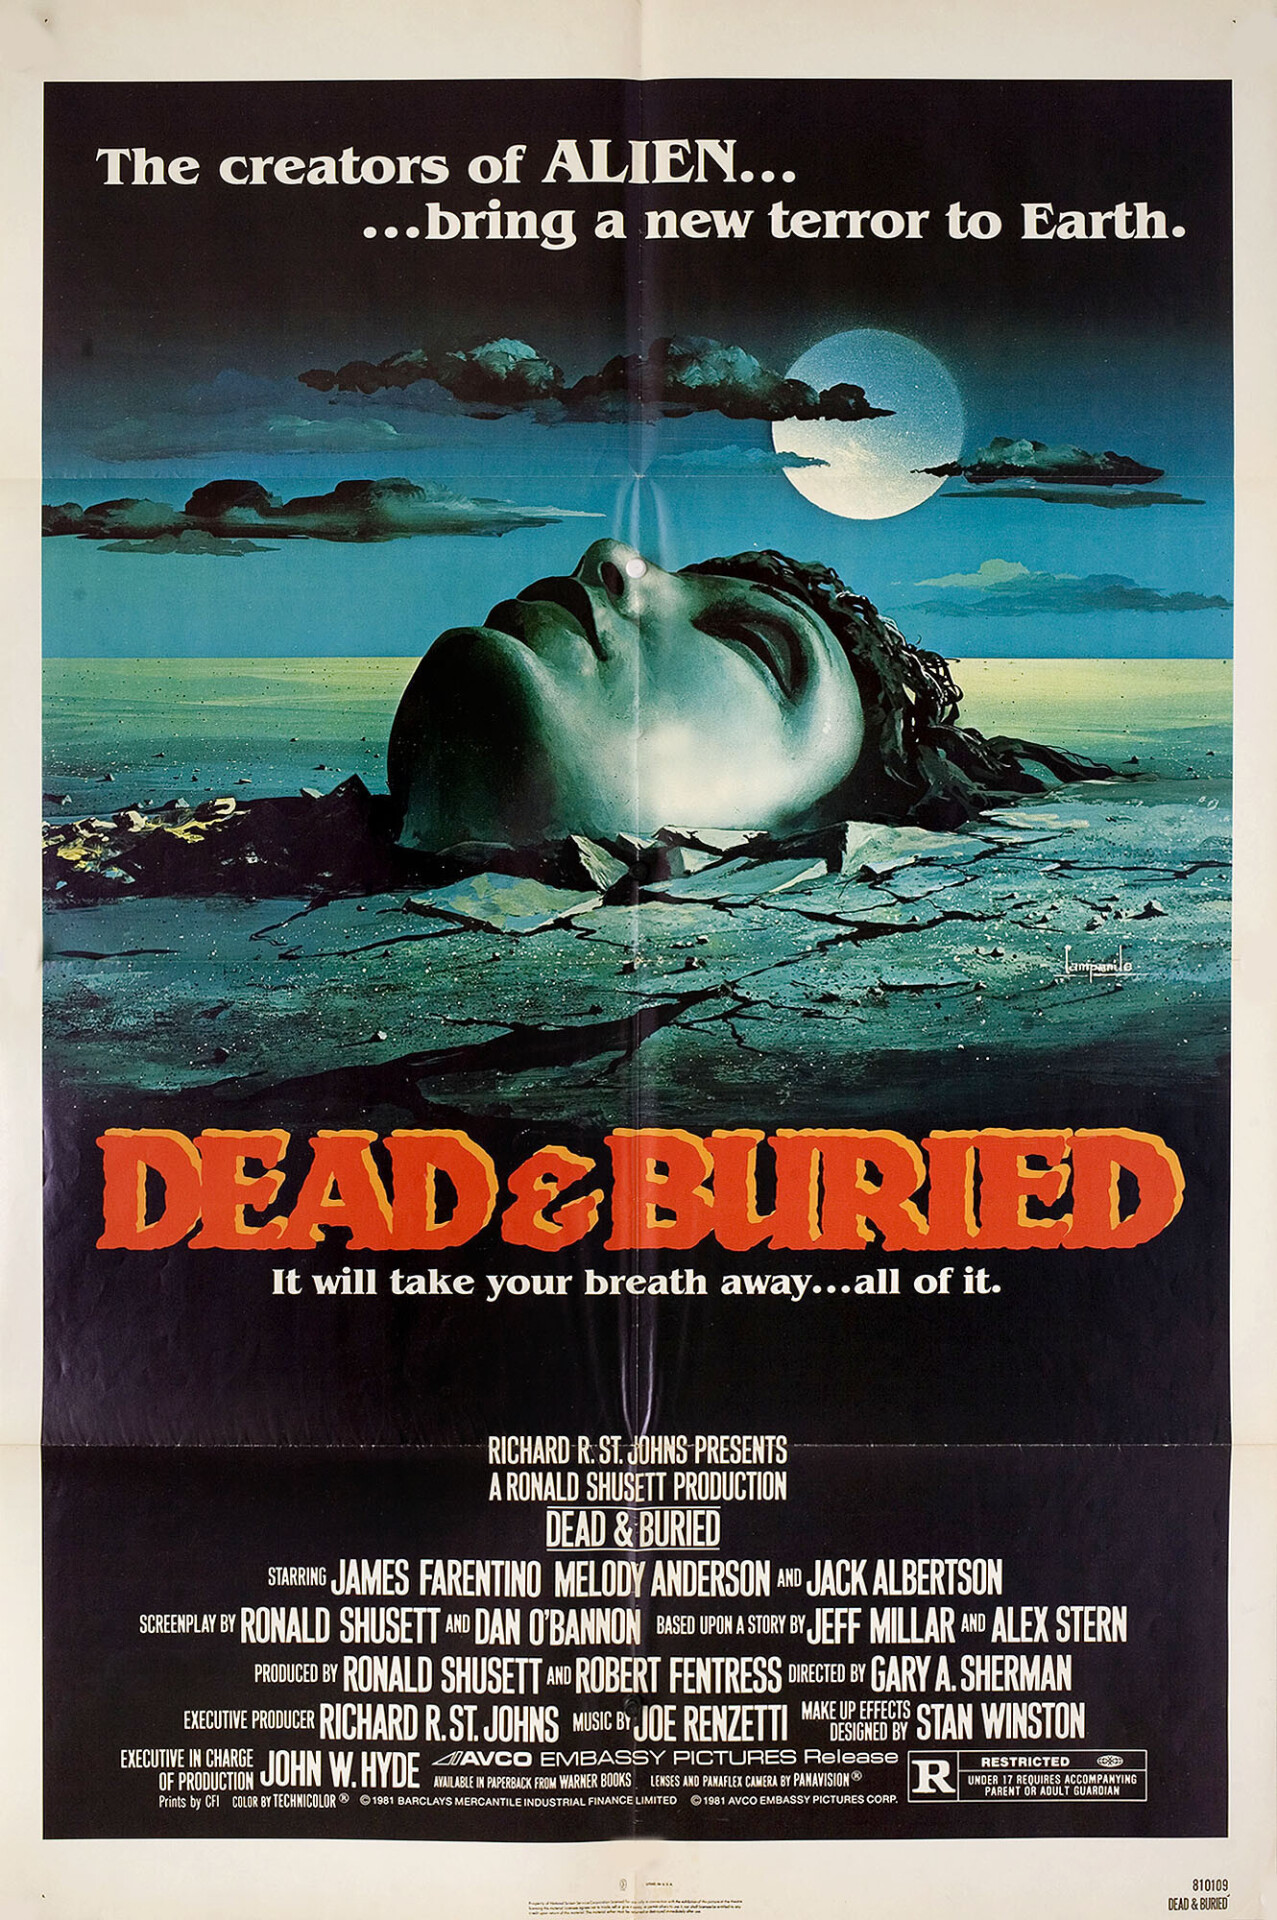 Похоронены, но не мертвы (Dead & Buried, 1981), режиссёр Гэри Шерман, американский постер к фильму, автор Кампанила (ужасы, 1981 год)